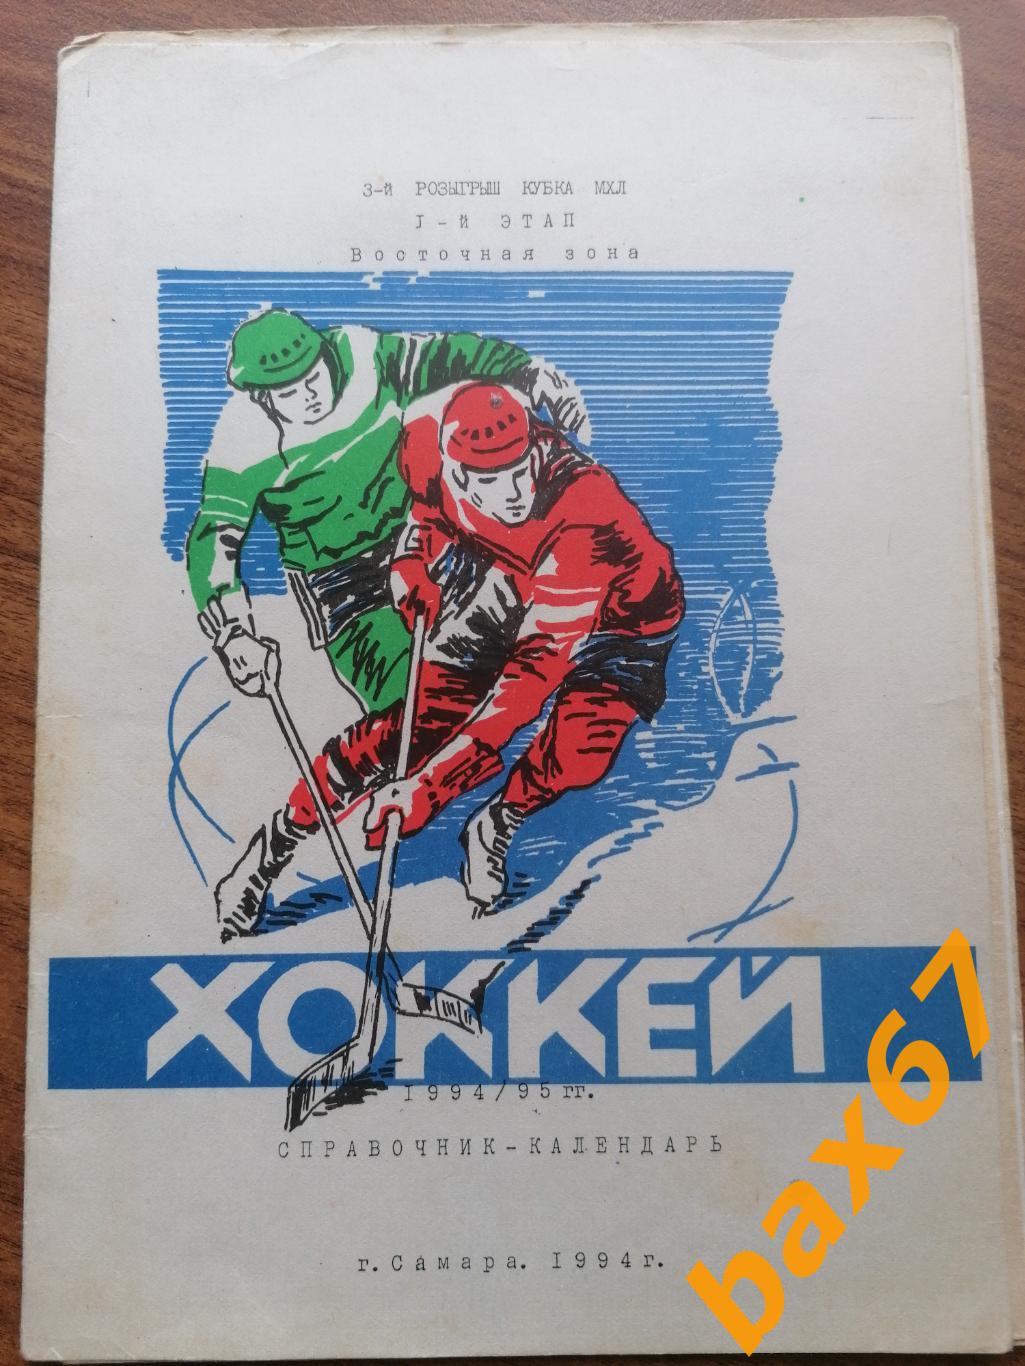 Хоккей Самара 1994, восточная зона 1-этап.